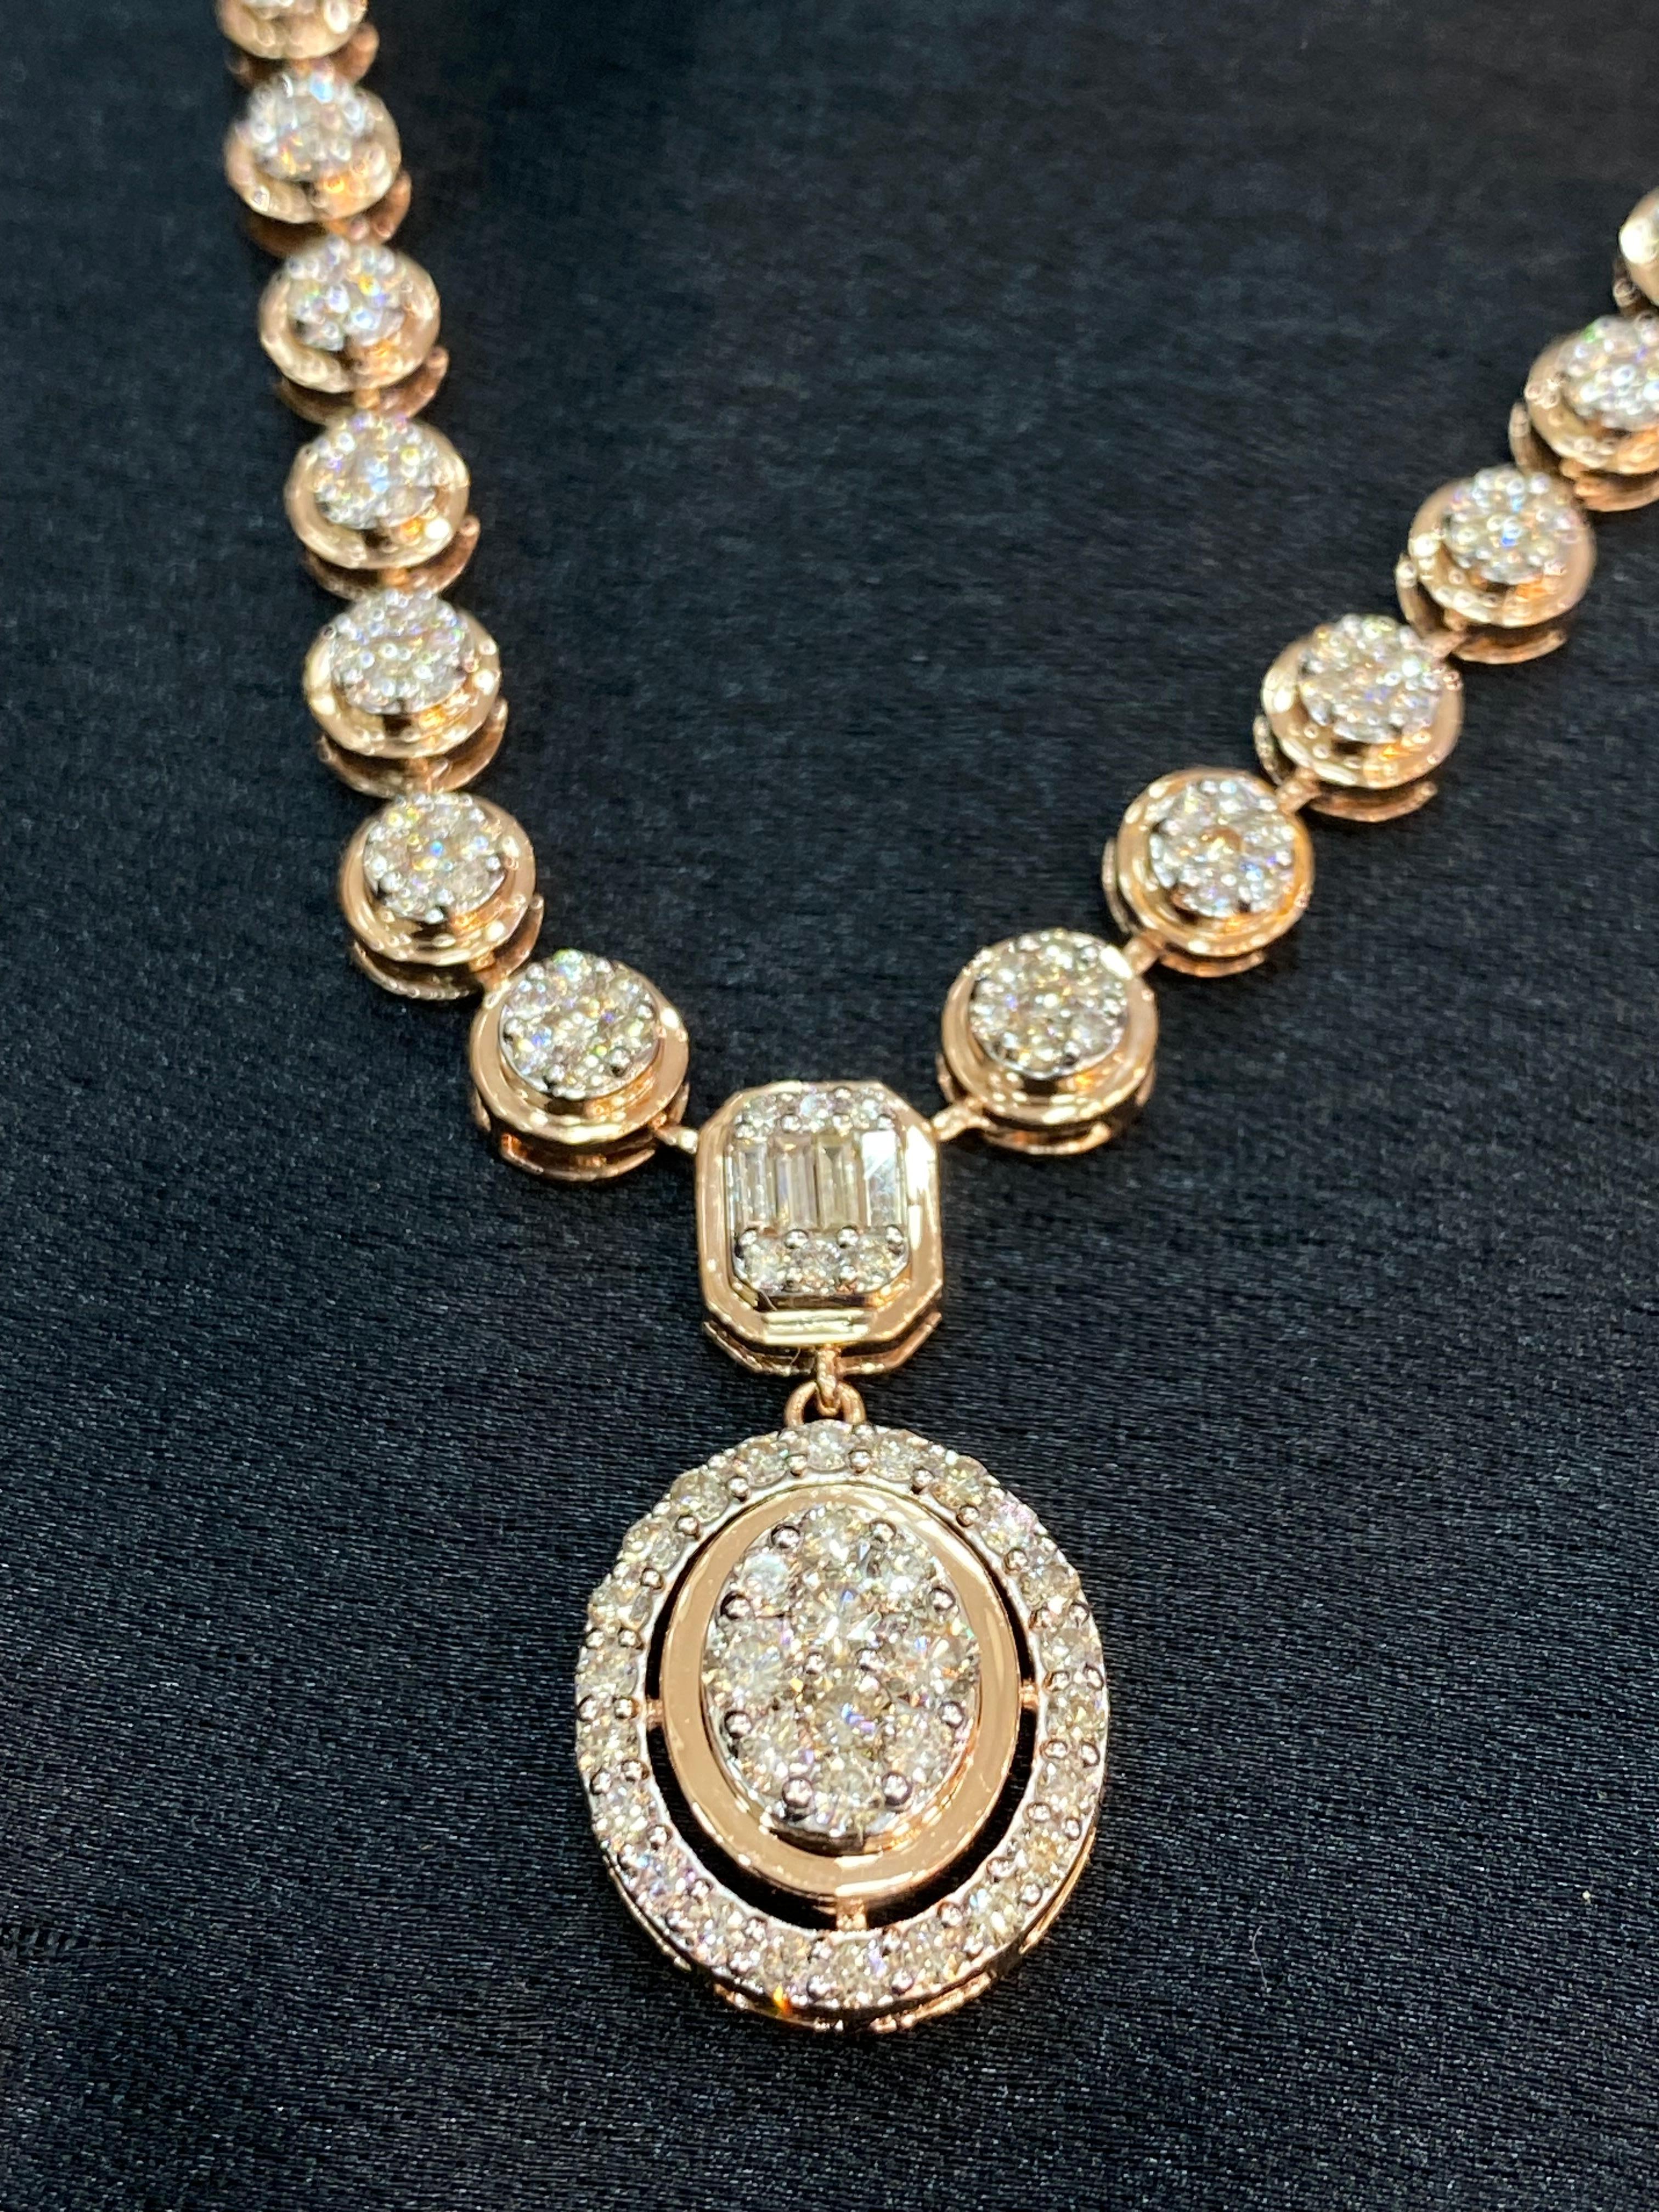 Schmücken Sie sich mit dieser exquisiten Halskette mit 2,40 Karat natürlichen runden Diamanten in Baguetteform, gefasst in authentischem 14-karätigem Roségold. Erhöhen Sie Ihren Stil und stehen Sie bei jeder Veranstaltung im